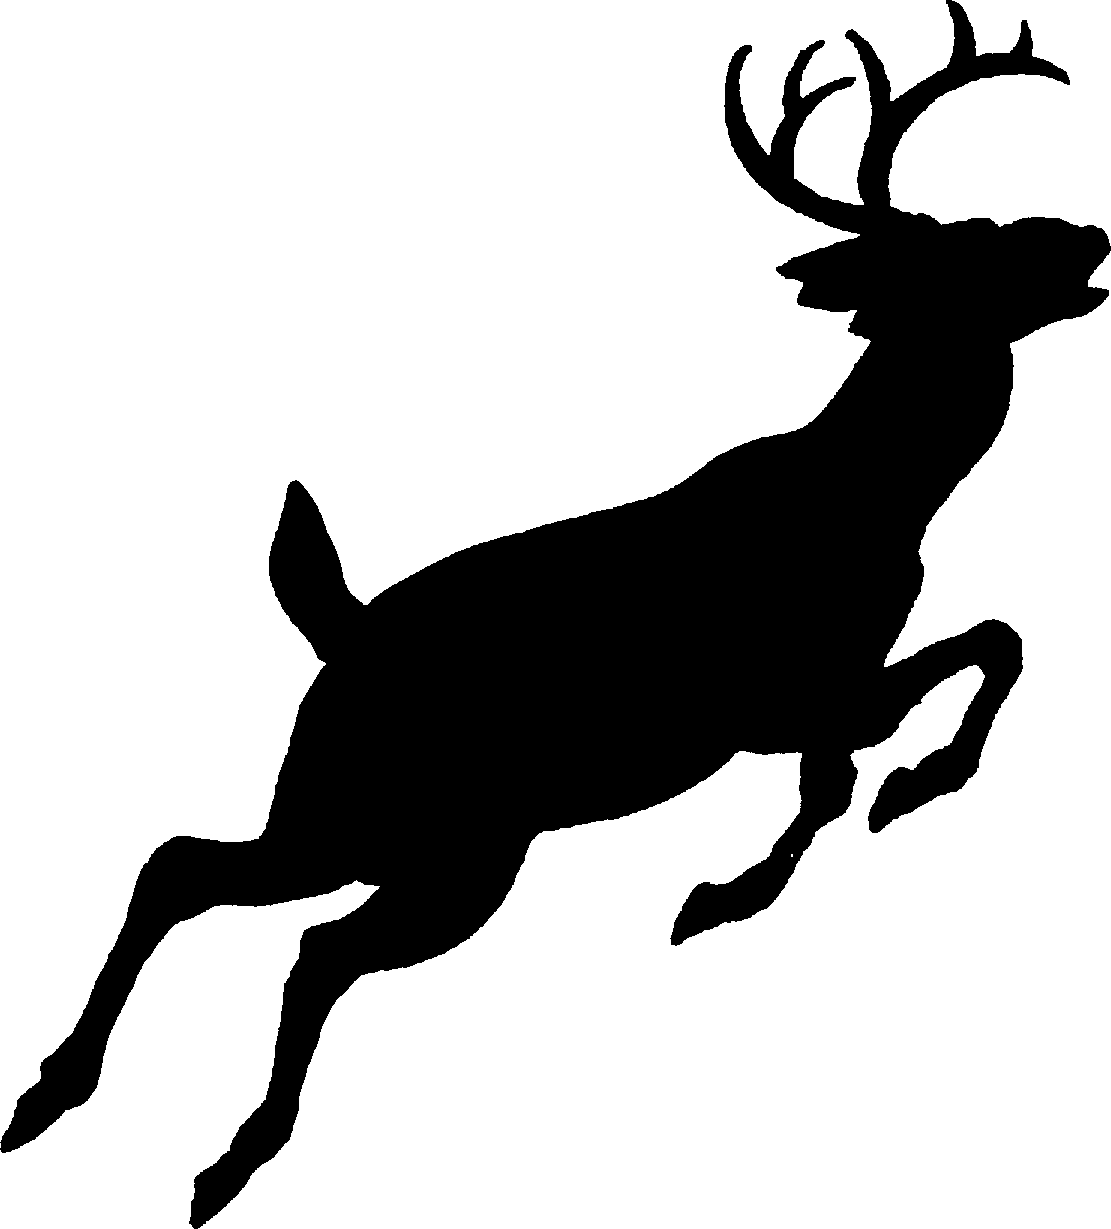 Big Bucks Logo free image download